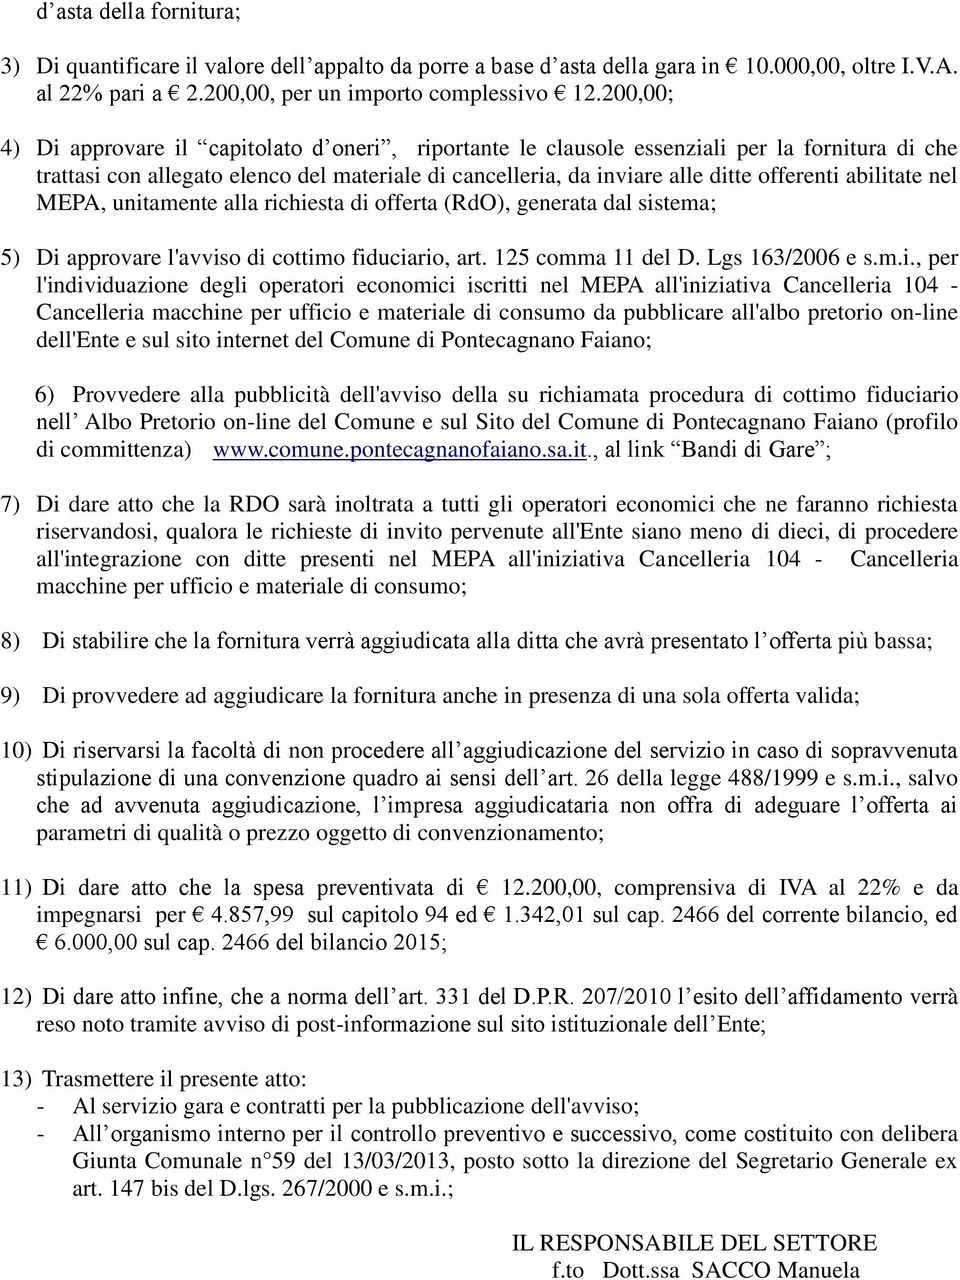 abilitate nel MEPA, unitamente alla richiesta di offerta (RdO), generata dal sistema; 5) Di approvare l'avviso di cottimo fiduciario, art. 125 comma 11 del D. Lgs 163/2006 e s.m.i., per